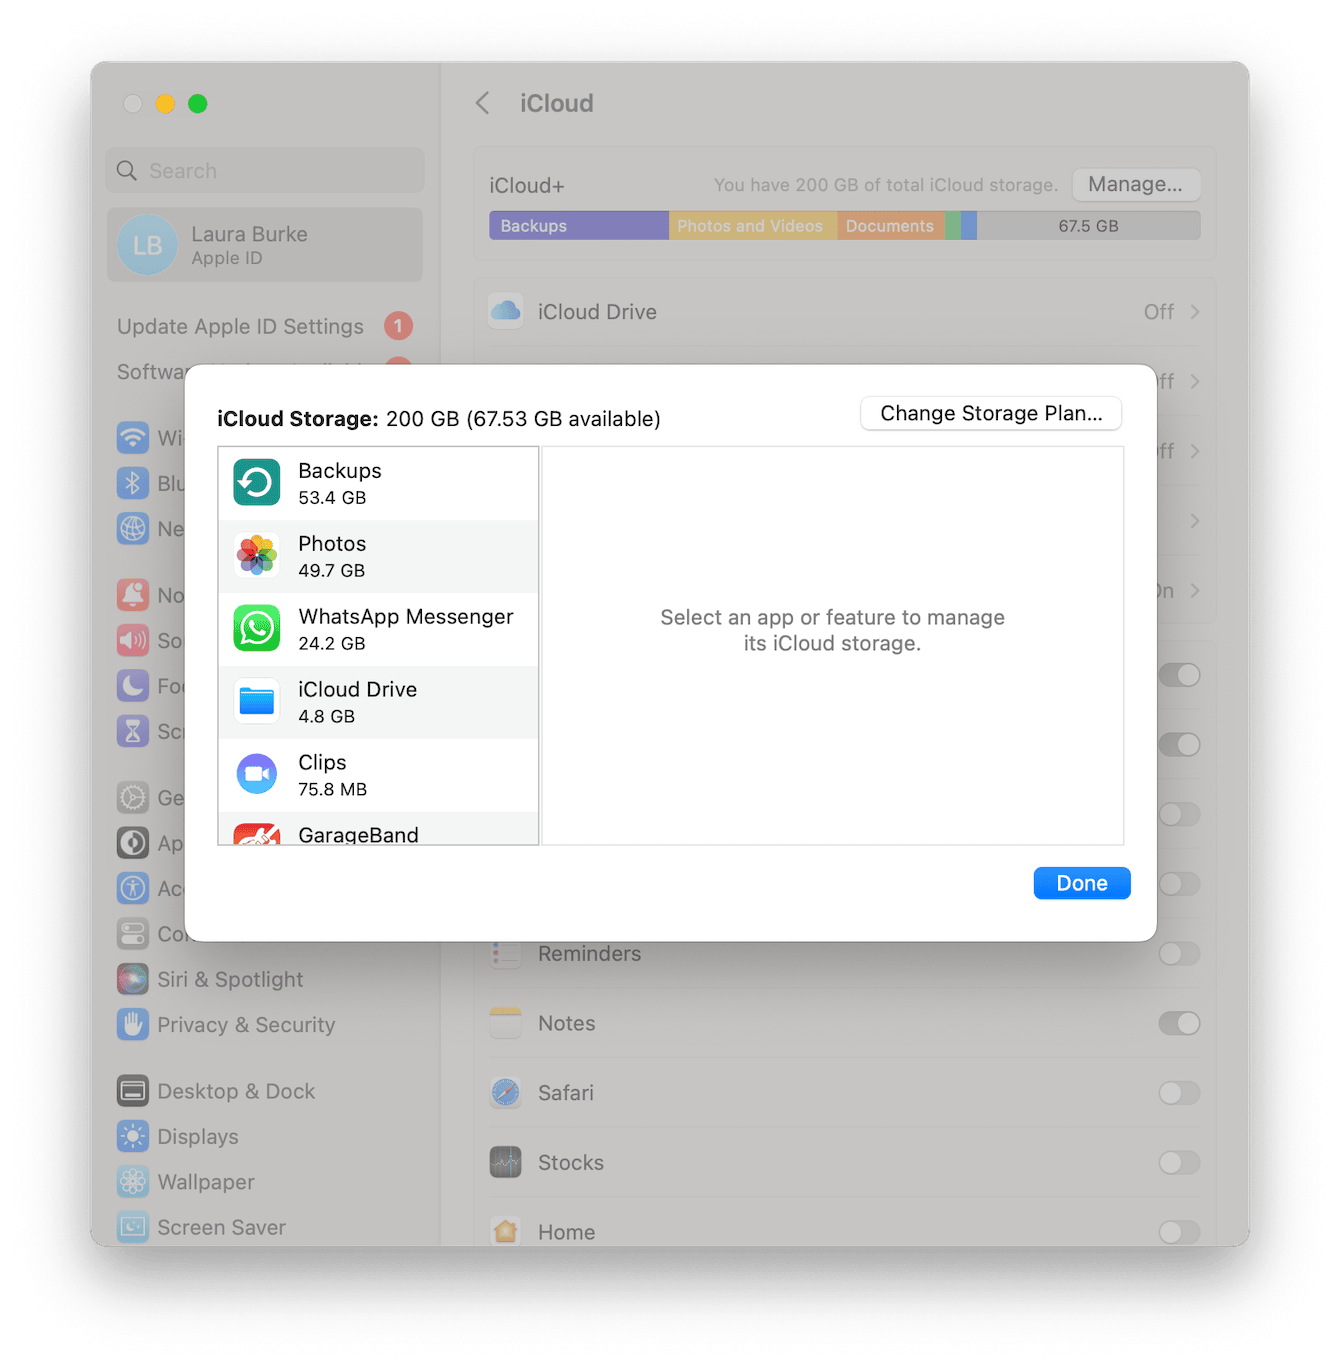 iCloud storage on Mac is full